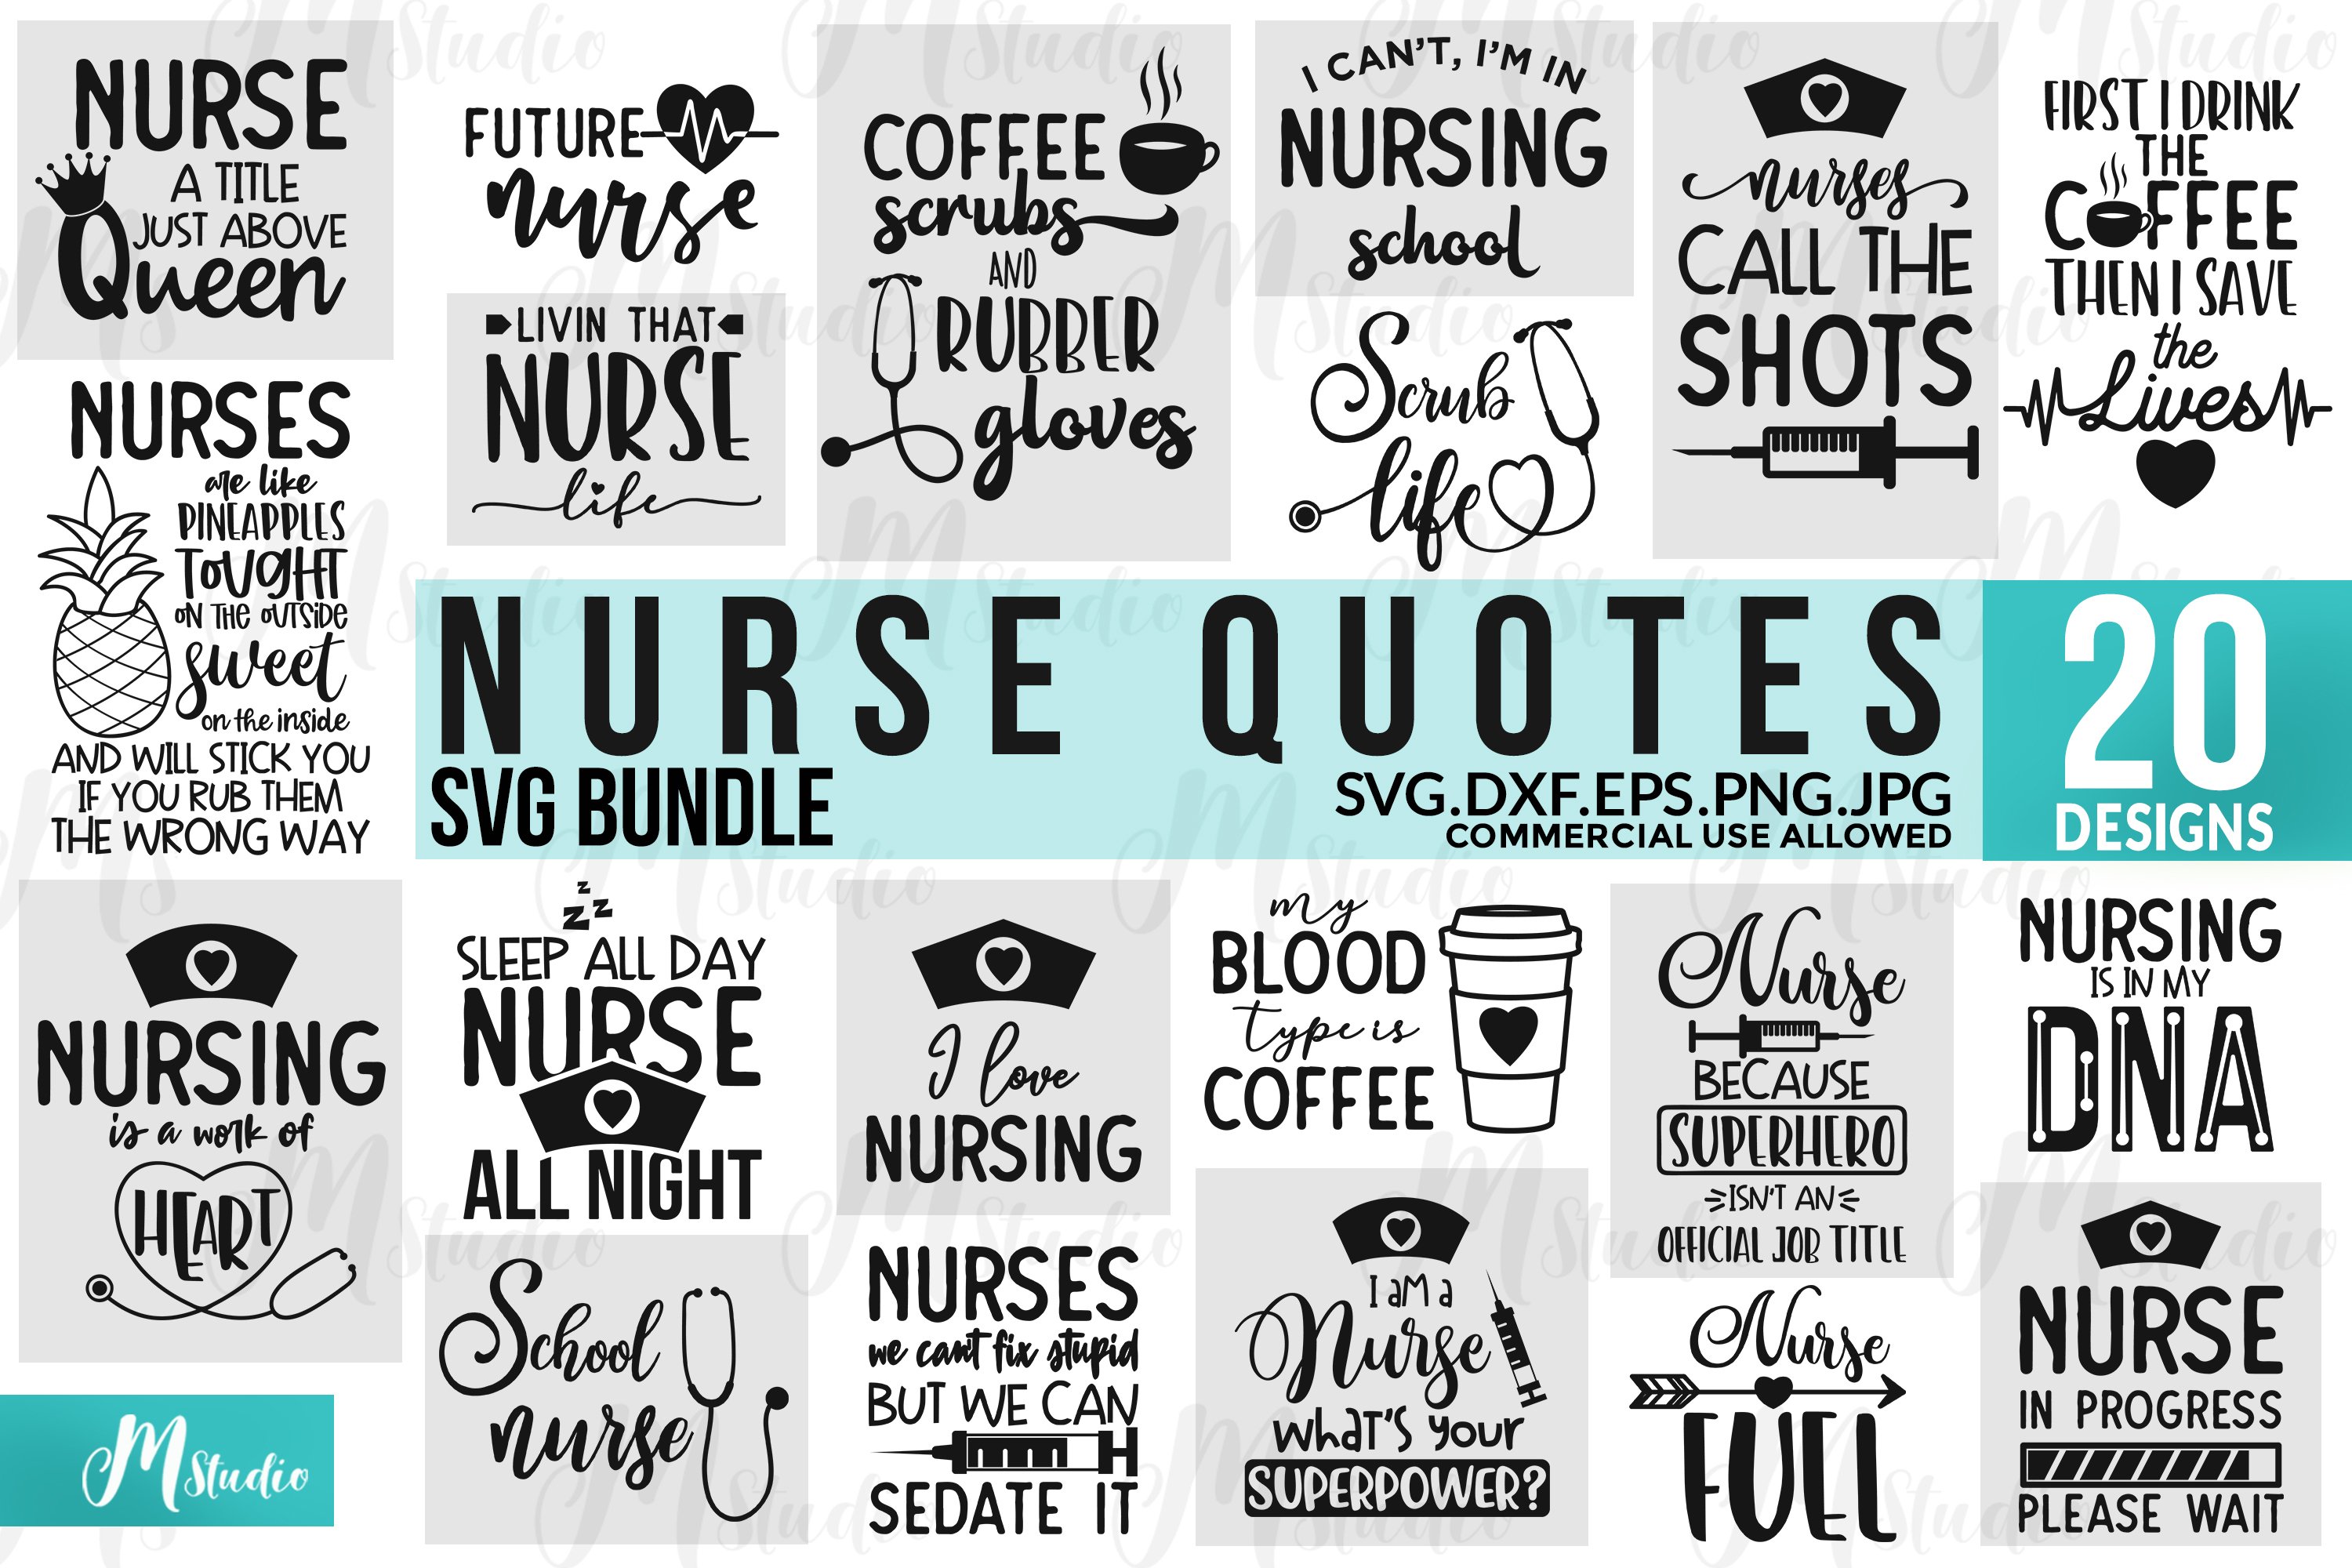 Elements for nurse.